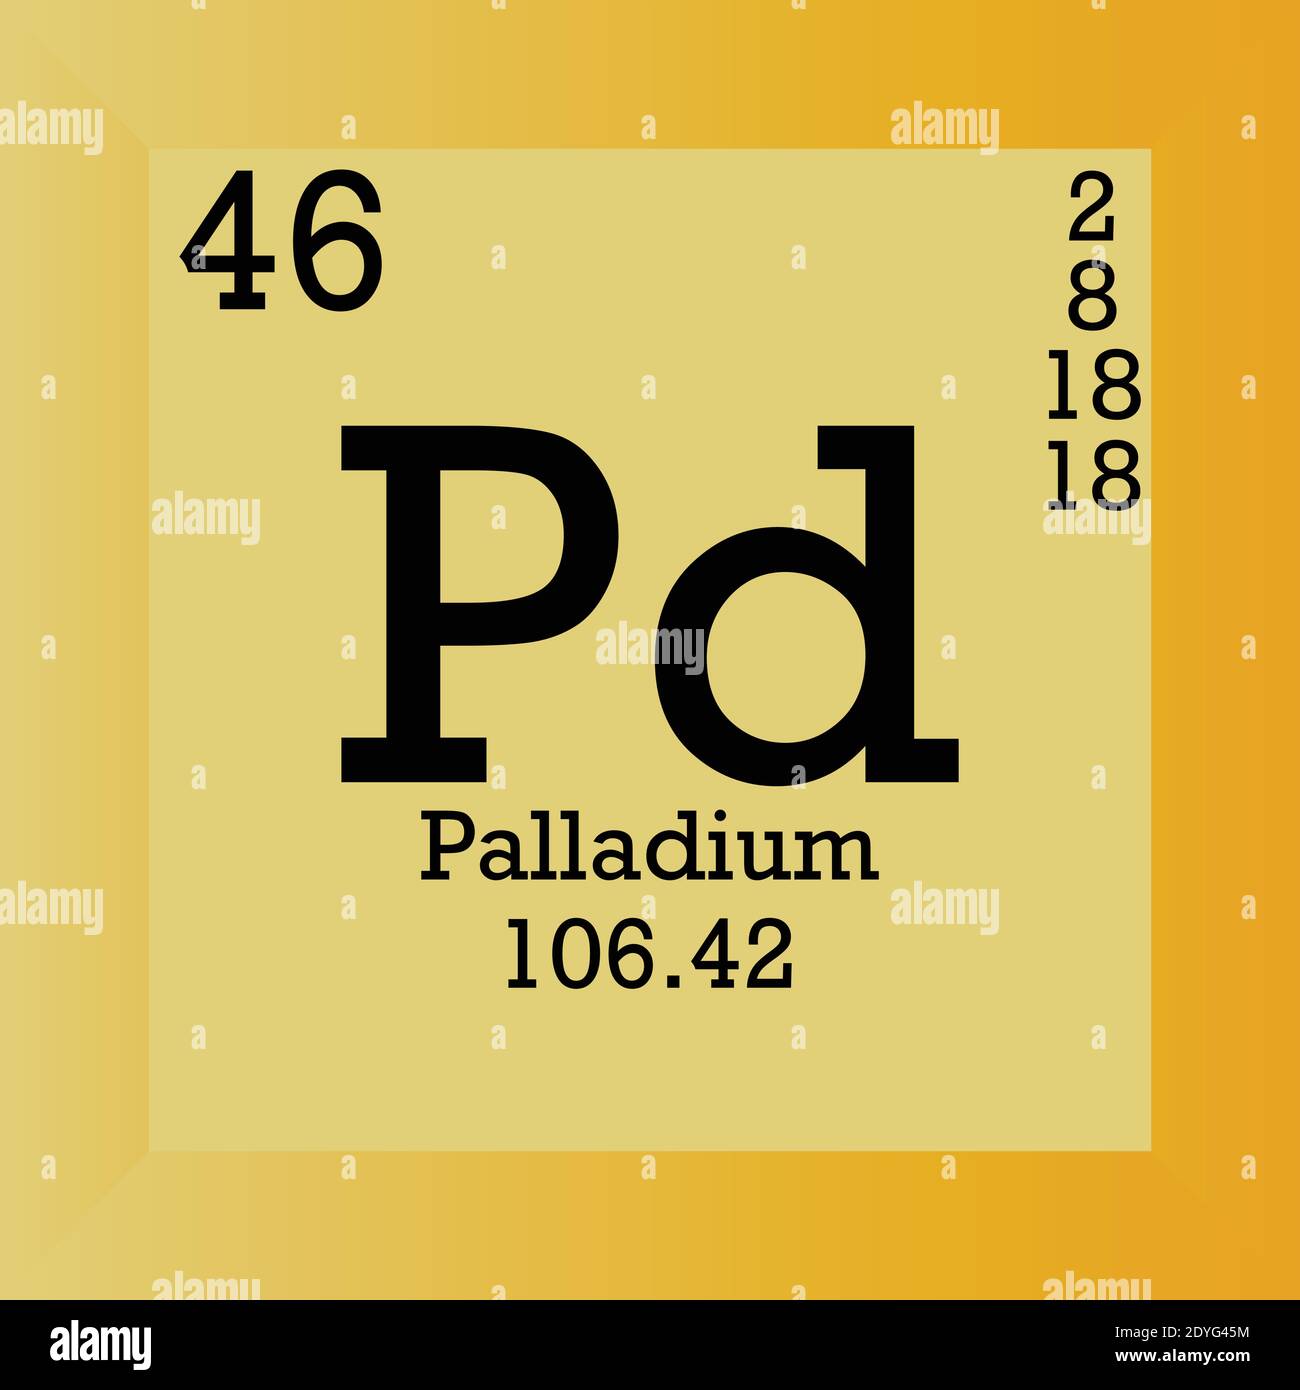 Pd Palladium Periodensystem Für Chemische Elemente.  Einzelvektordarstellung, Elementsymbol mit molarer Masse, Ordnungszahl und  Elektronenkonf Stock-Vektorgrafik - Alamy